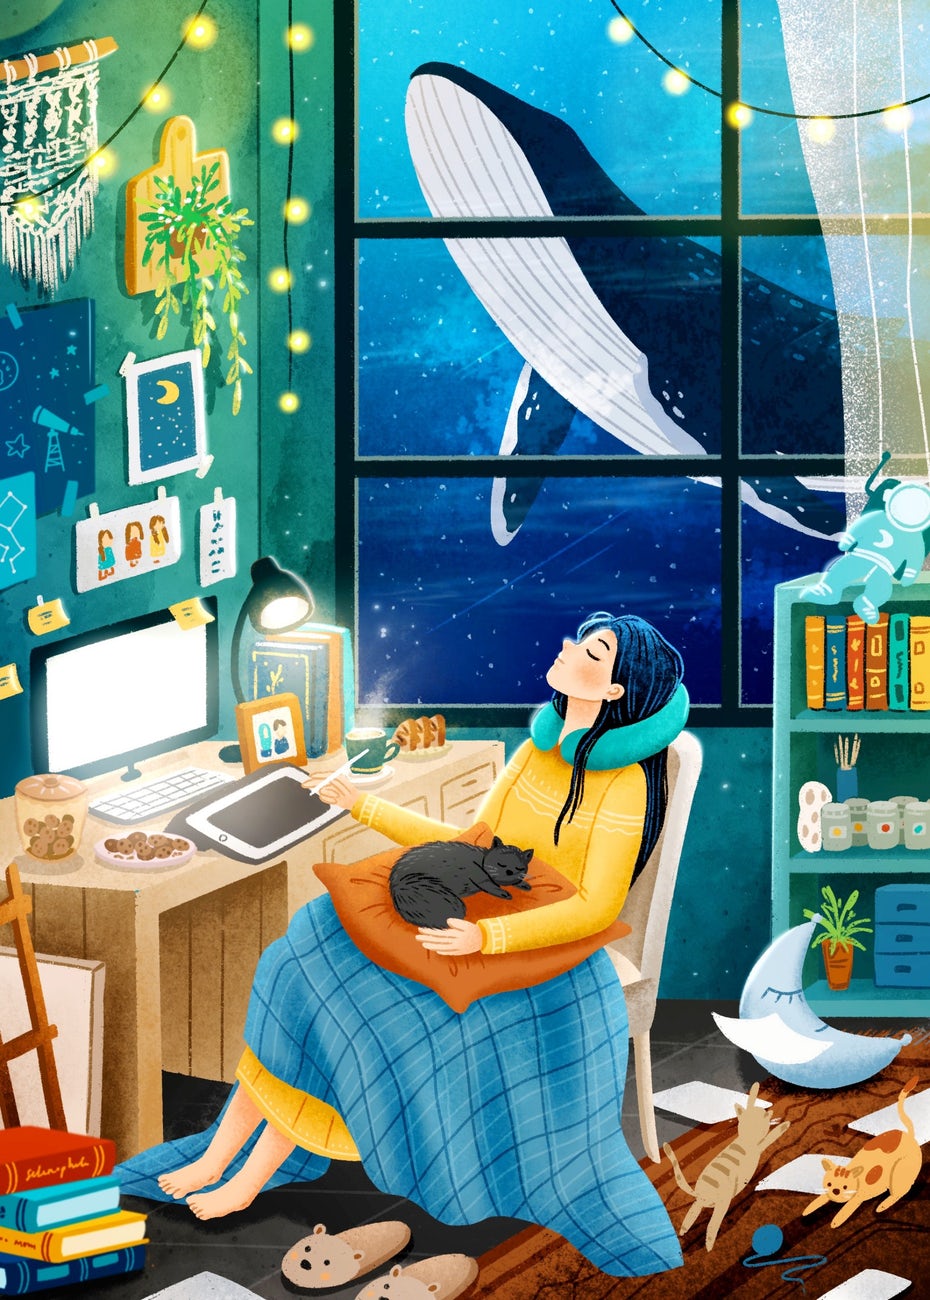  Иллюстрация женщины, сидящей за столом и рисующей на планшете в окружении предметов, кошек и кита через окно "width =" 1832 "height =" 2560 "/> 
 
<figcaption> Дизайн открытки Фитриандхита </figcaption></figure>
<blockquote class=